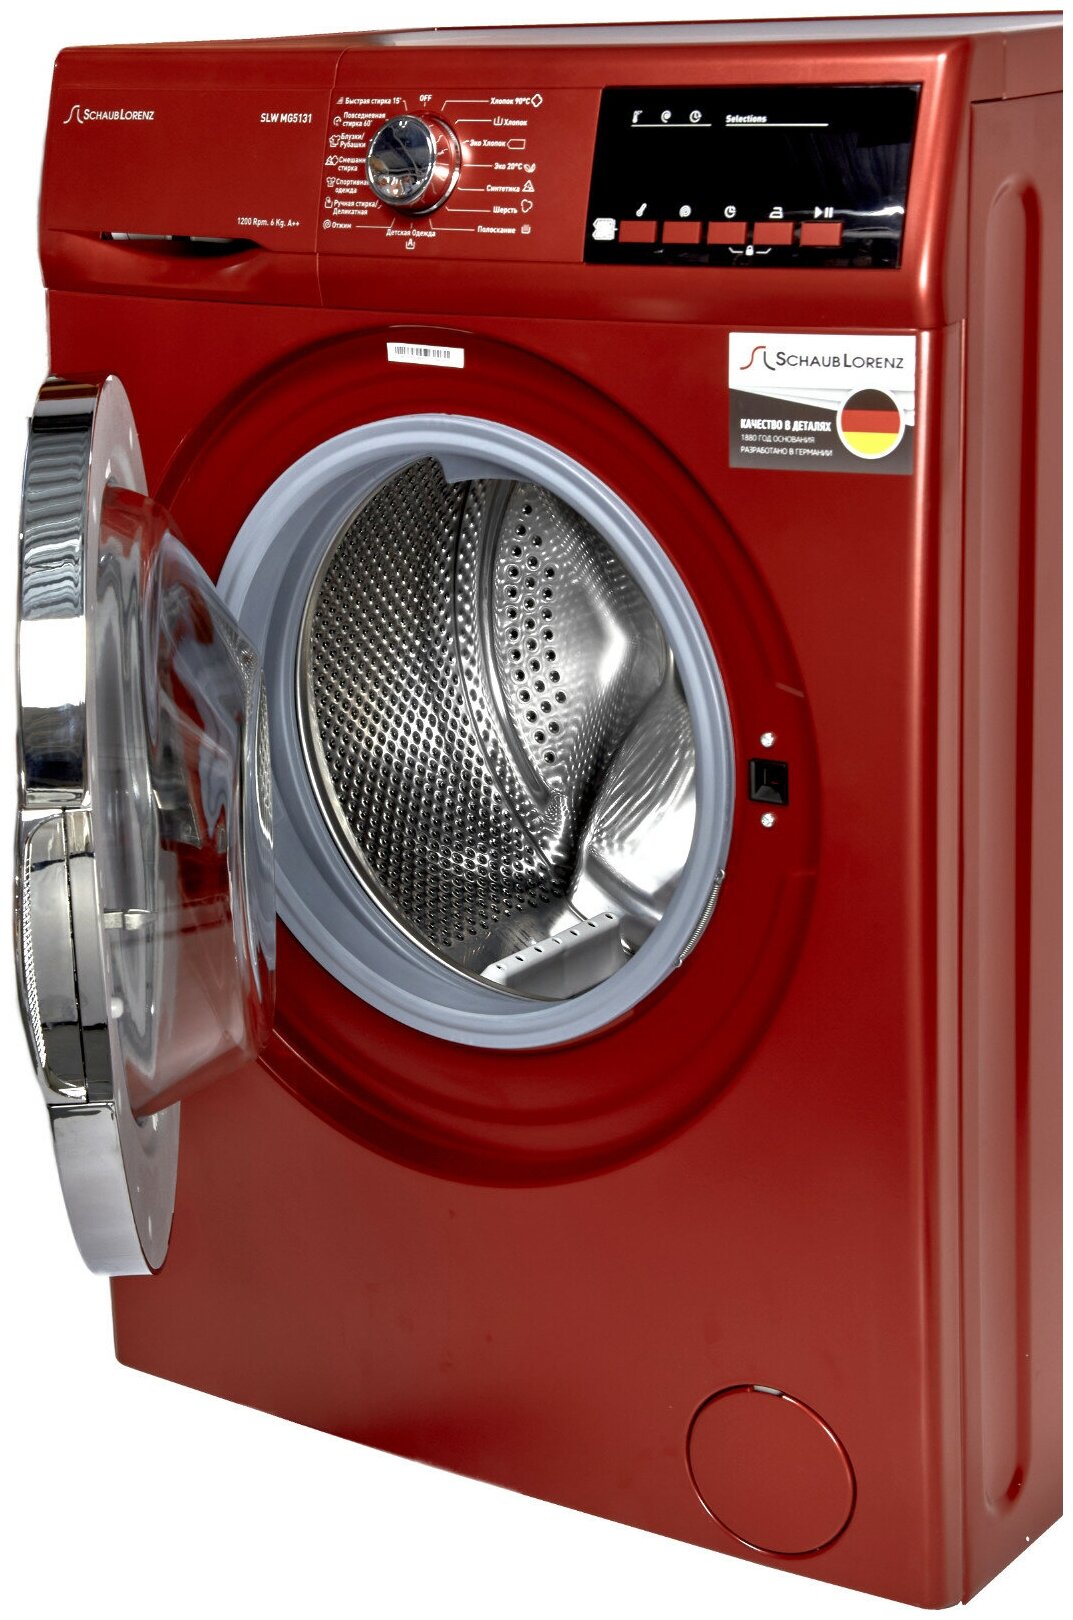 Узкая стиральная машина, 84.5x59.7x41.6 см, загрузка фронтальная, 6кг, до 1200 об/мин при отжиме, A++, LED дисплей, красная - фотография № 4